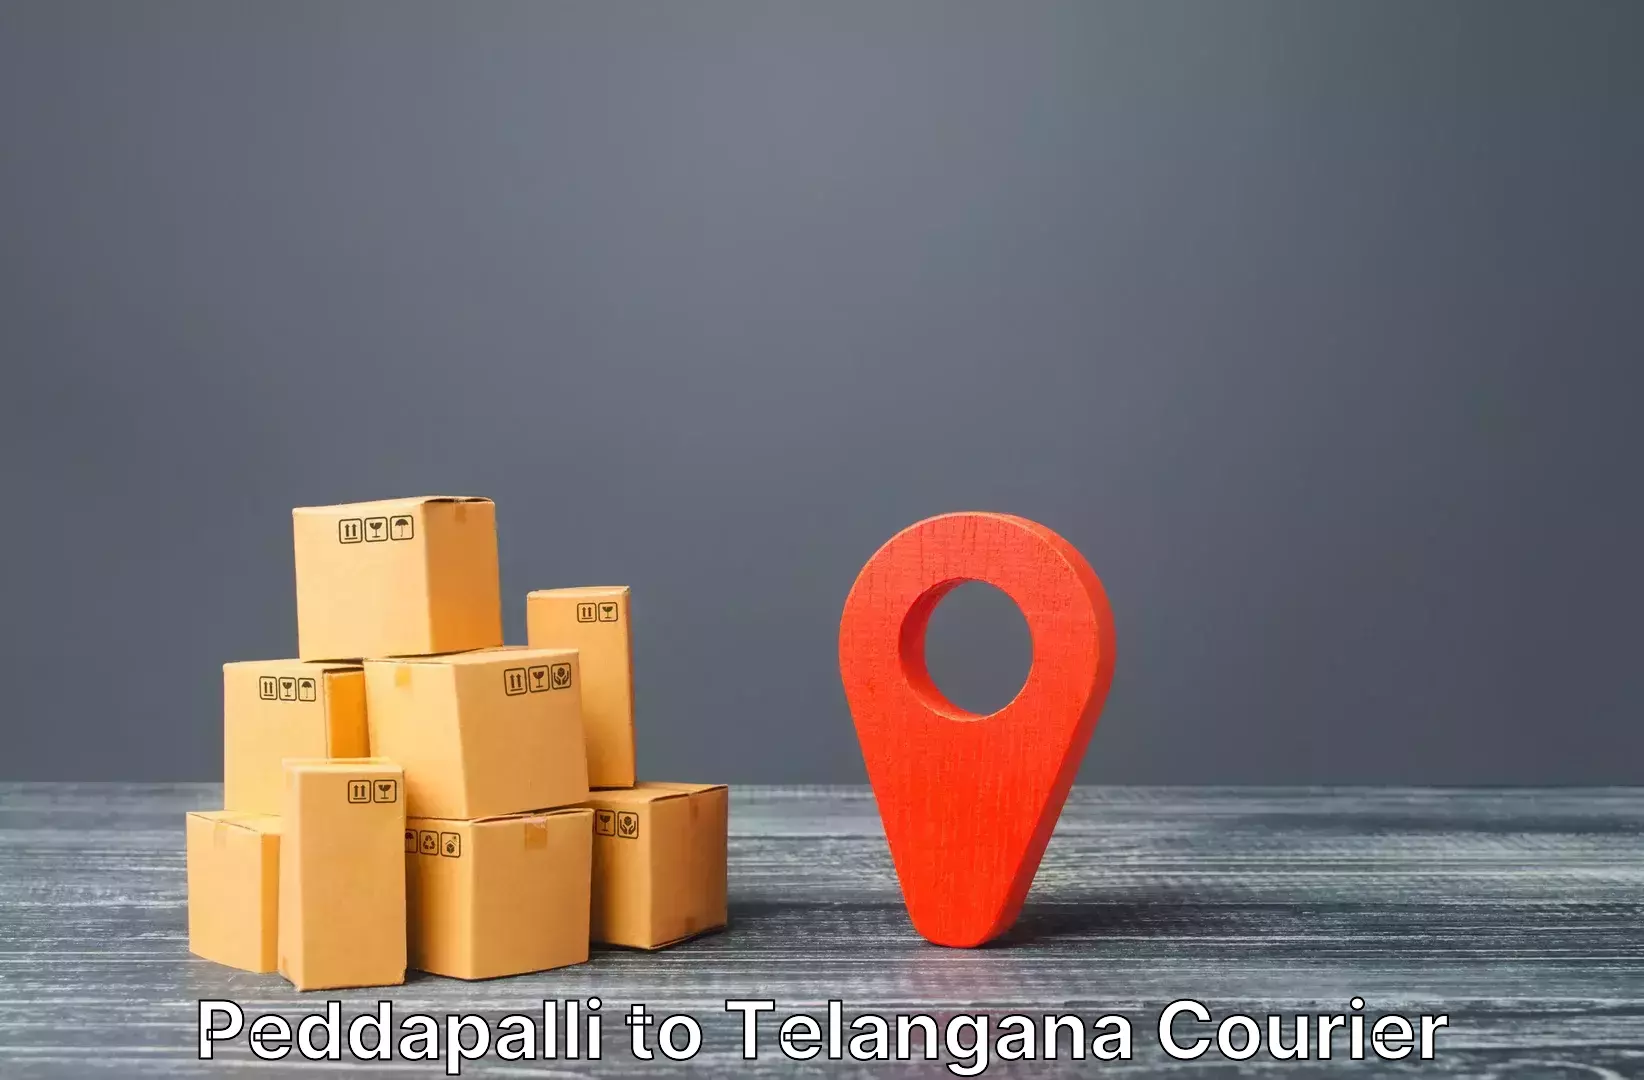 Luggage transport service Peddapalli to Nellikuduru